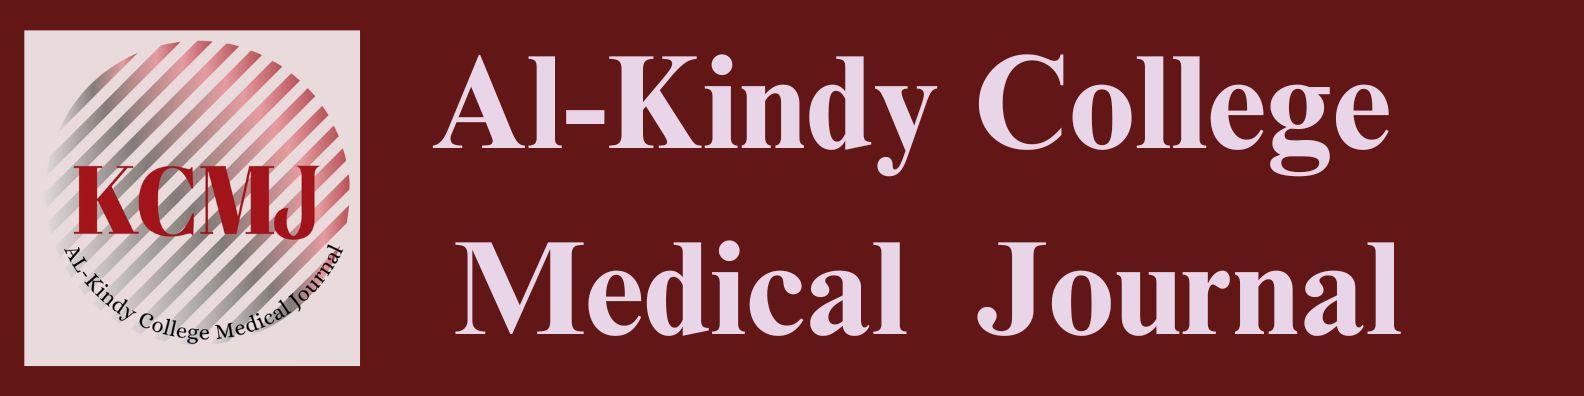 Al-Kindy College Medical Journal